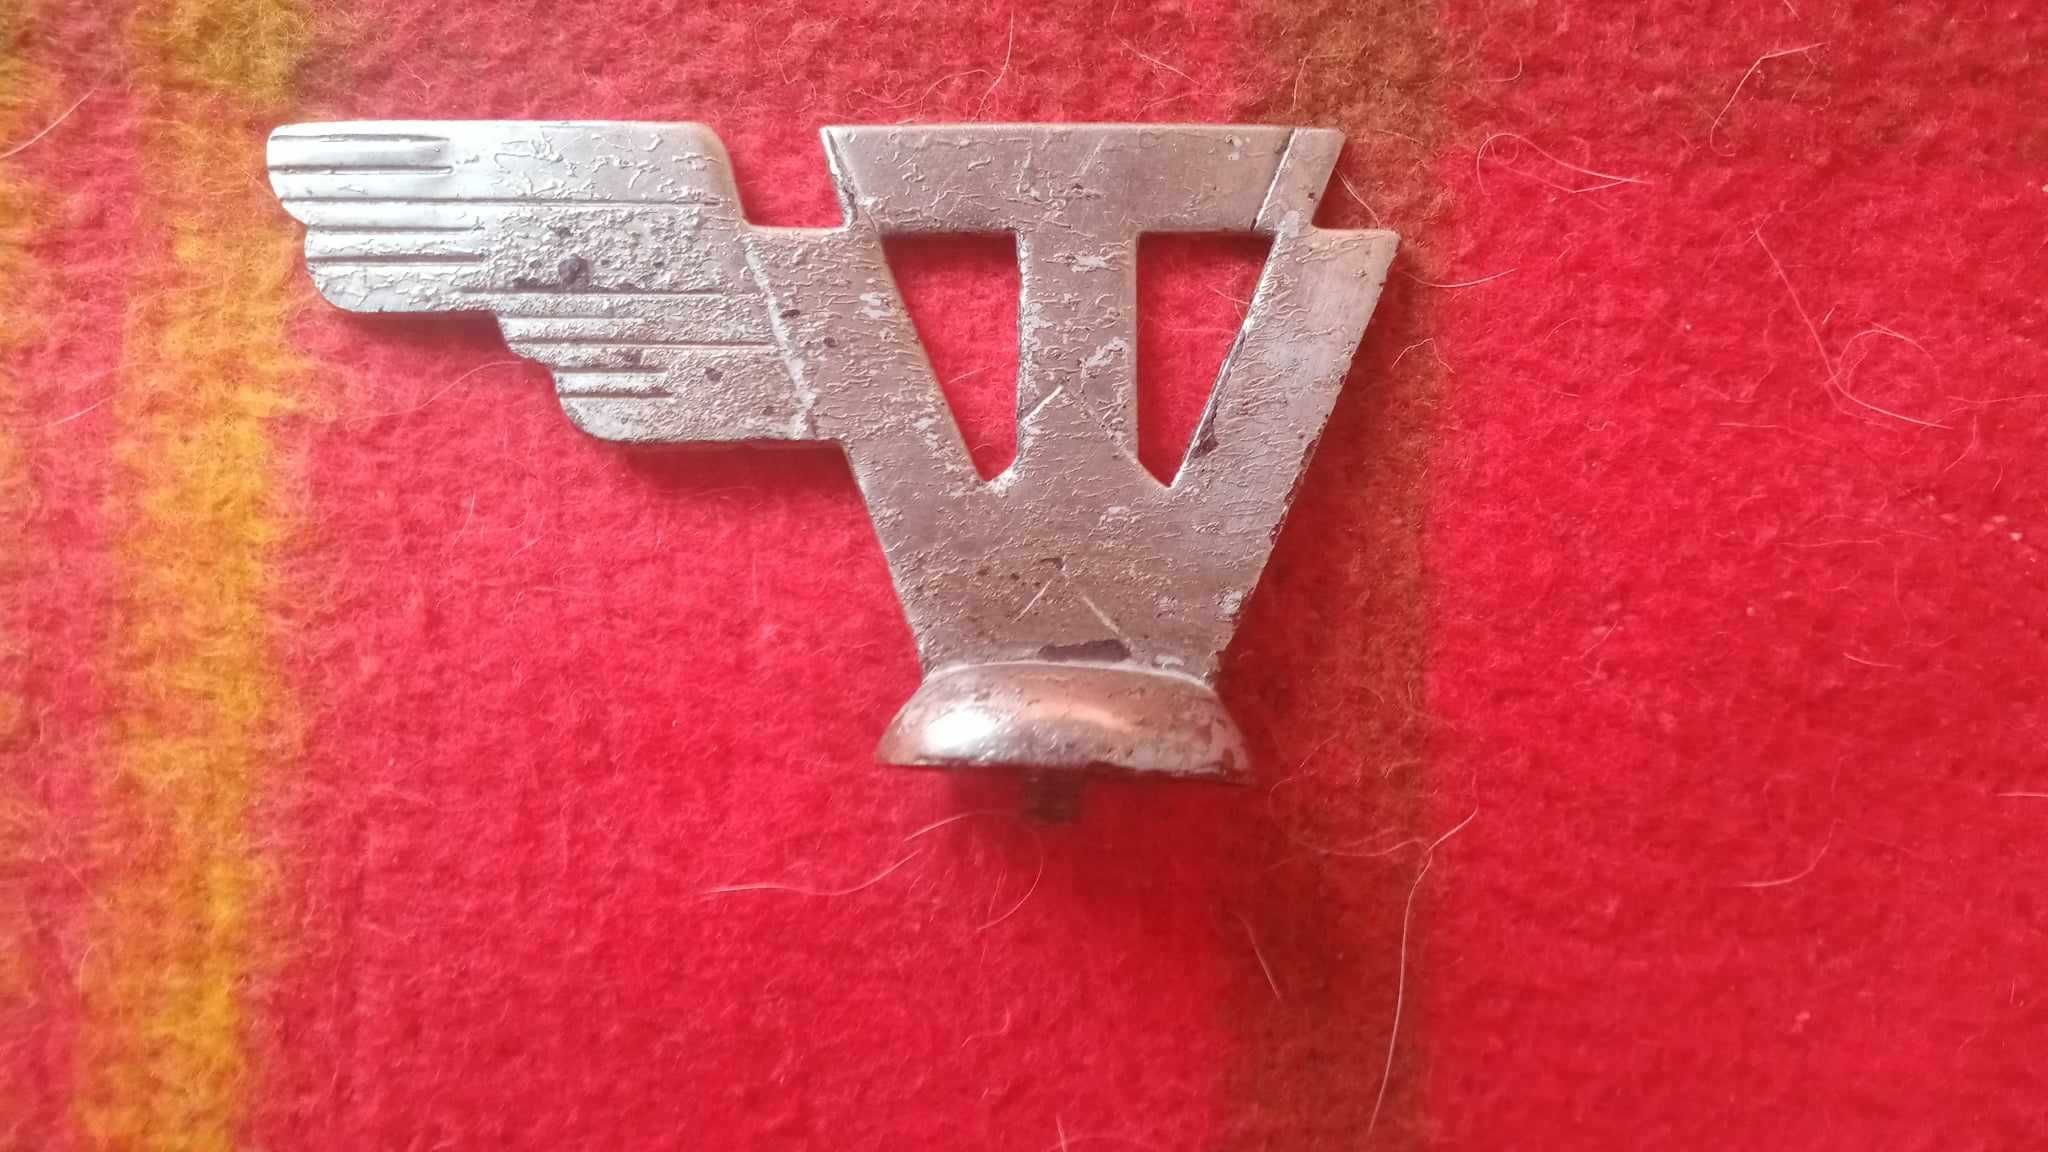 Stary emblemat,znaczek rowerowy TORPEDO/unikat